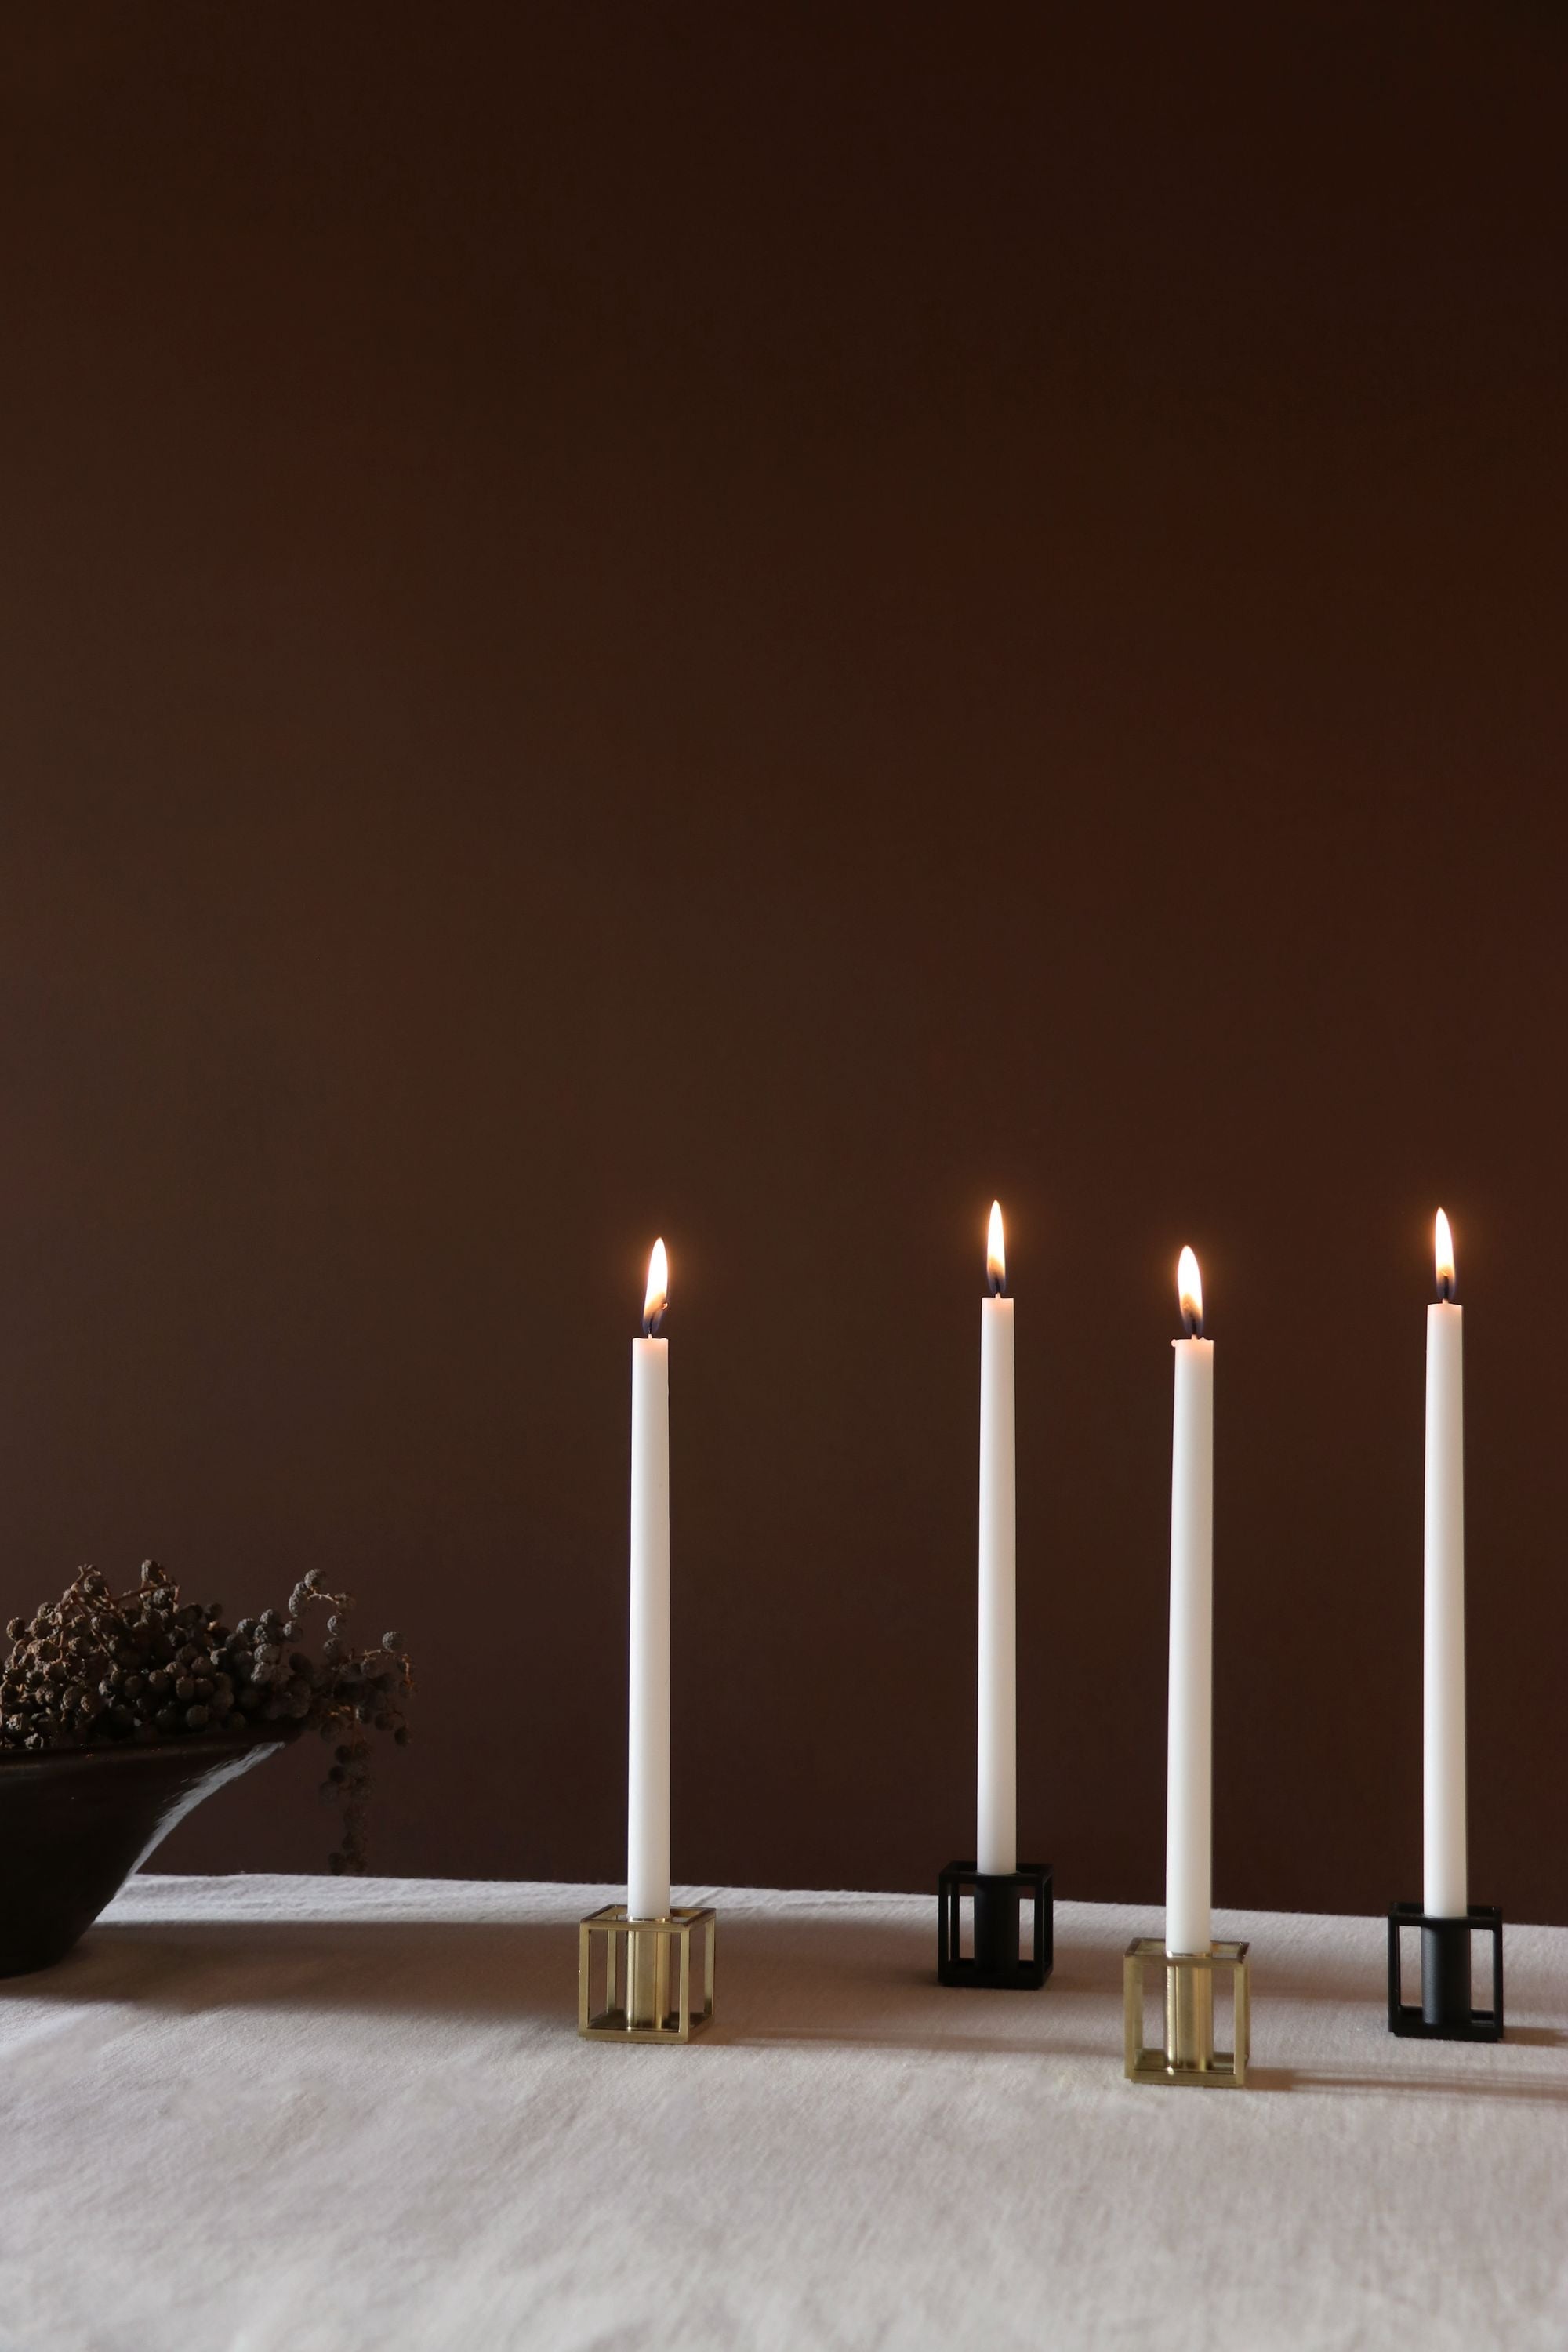 AUVO Kööpenhamina Kubus 1 kynttilänjalka, kiillotettu kupari